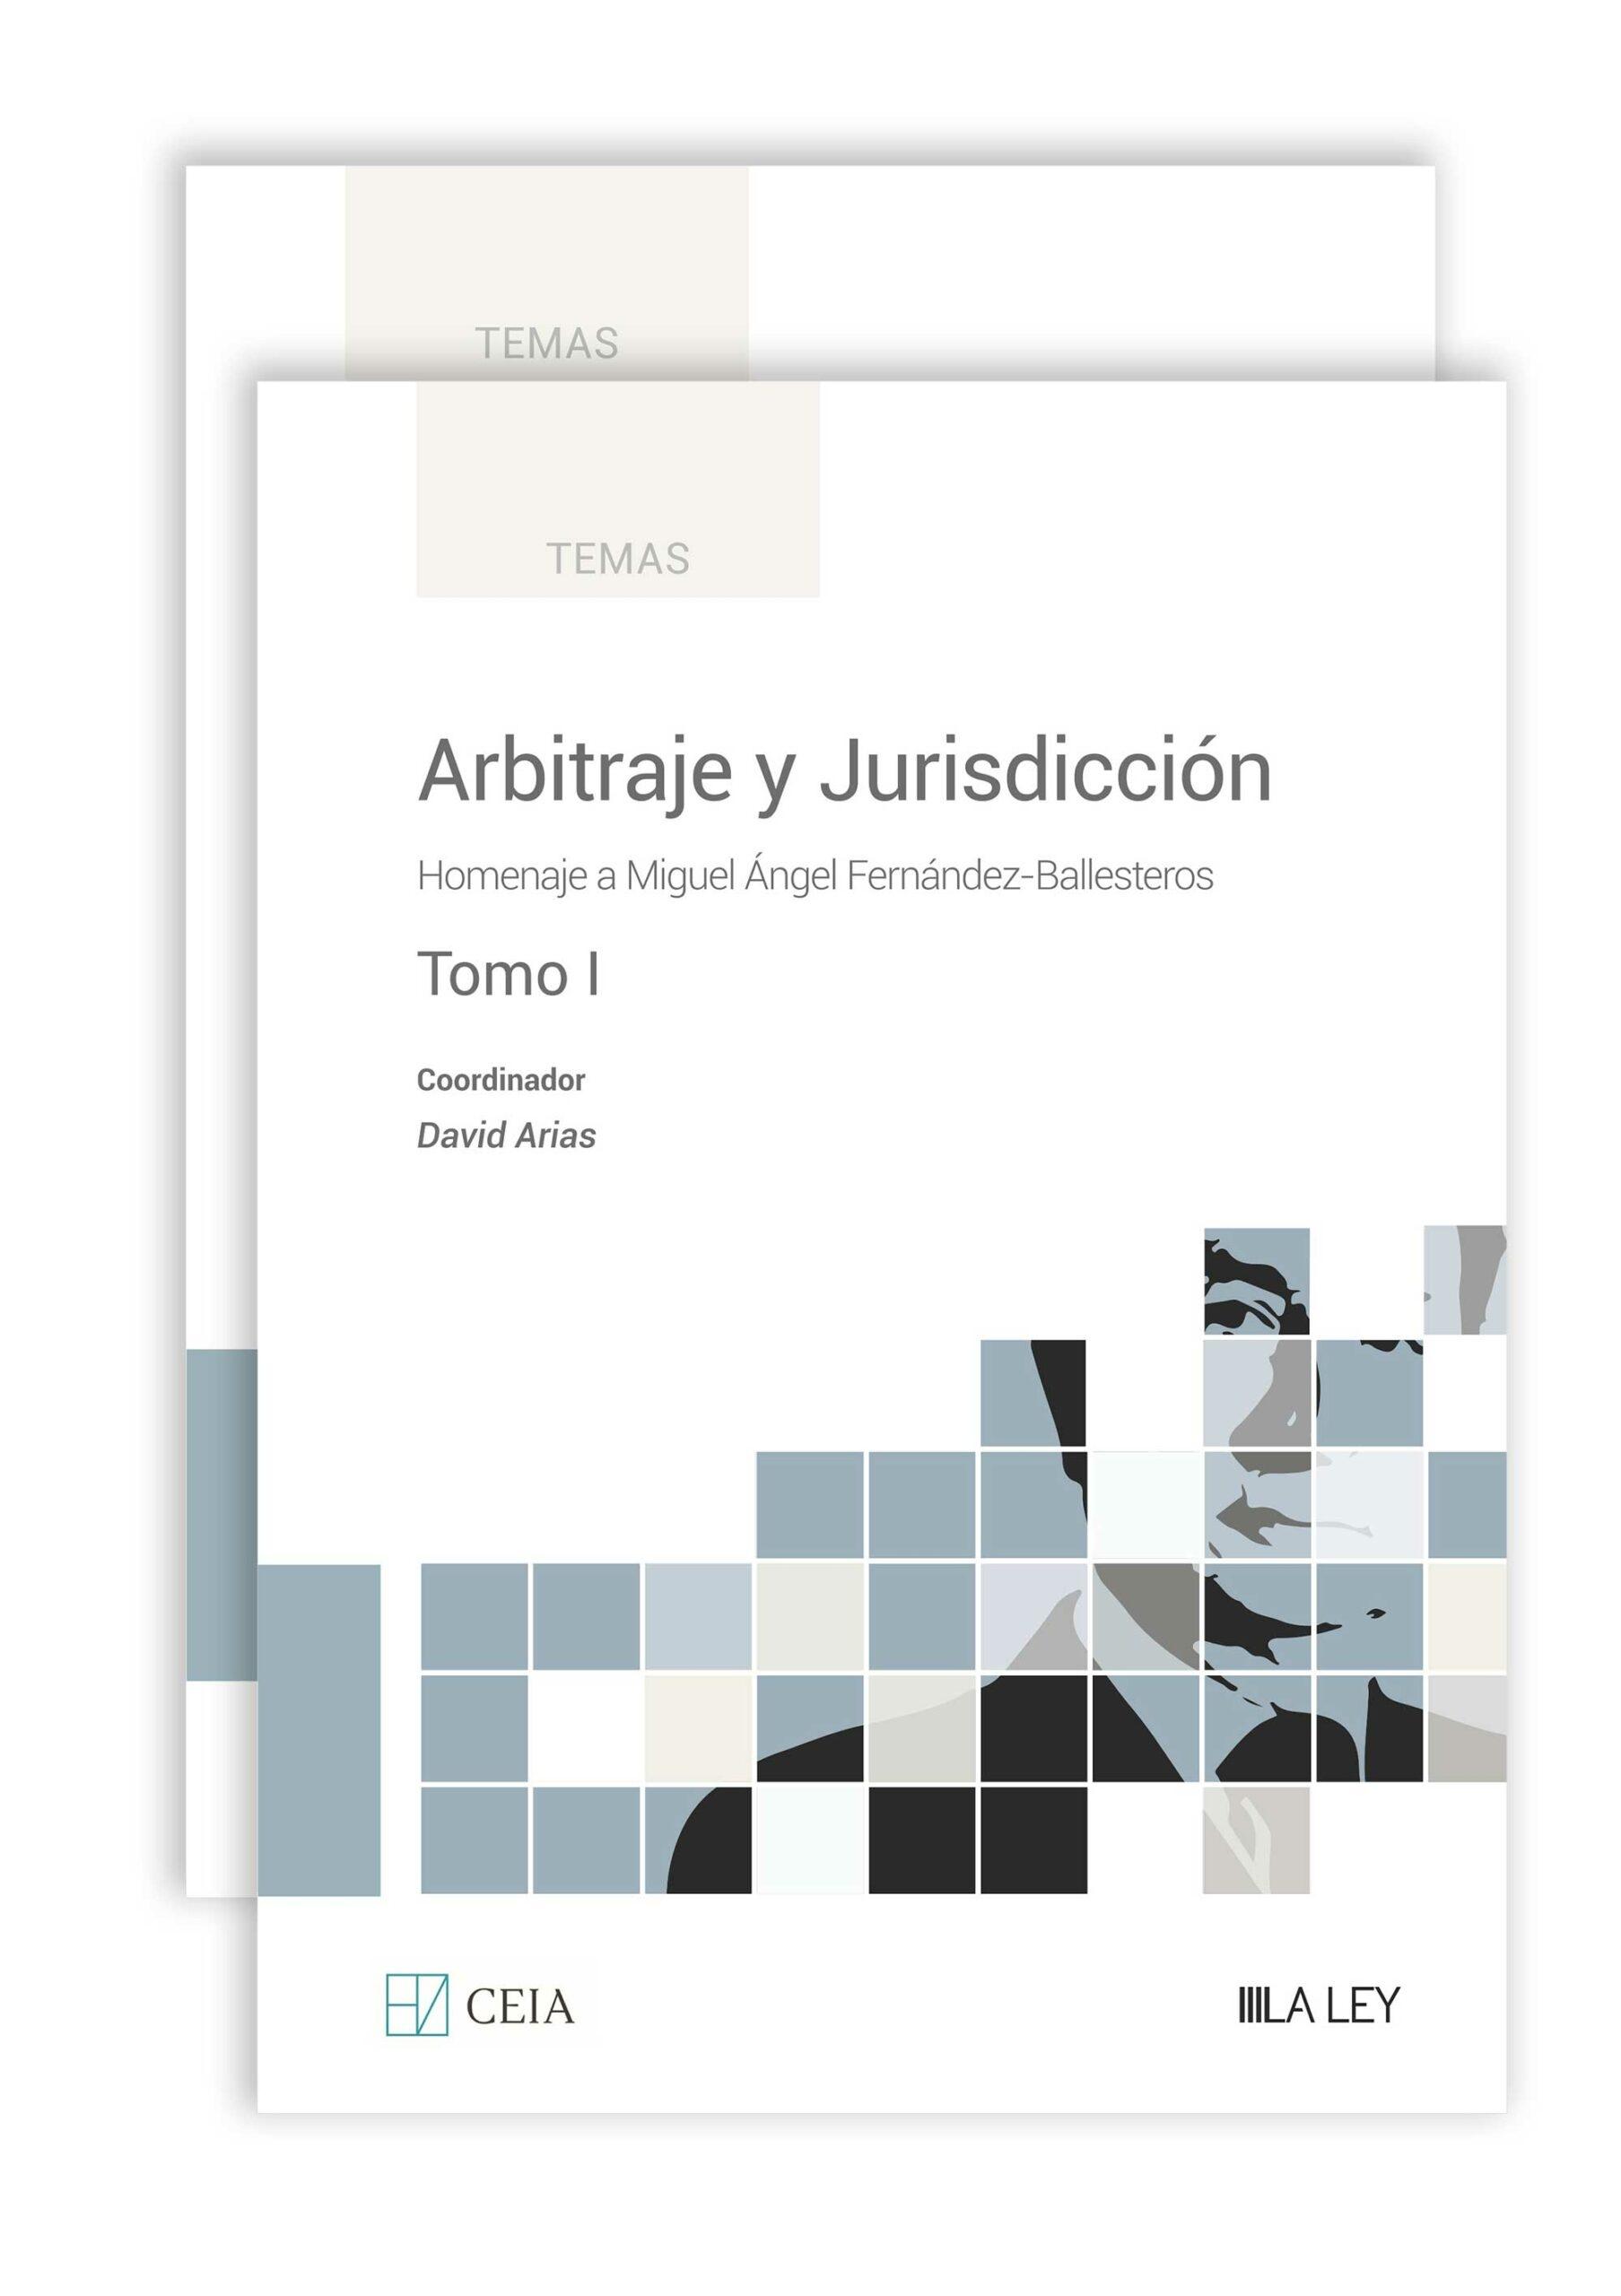 Arbitraje y jurisdicción 2 Tomos "Homenaje a Miguel Ángel Fernández-Ballesteros"